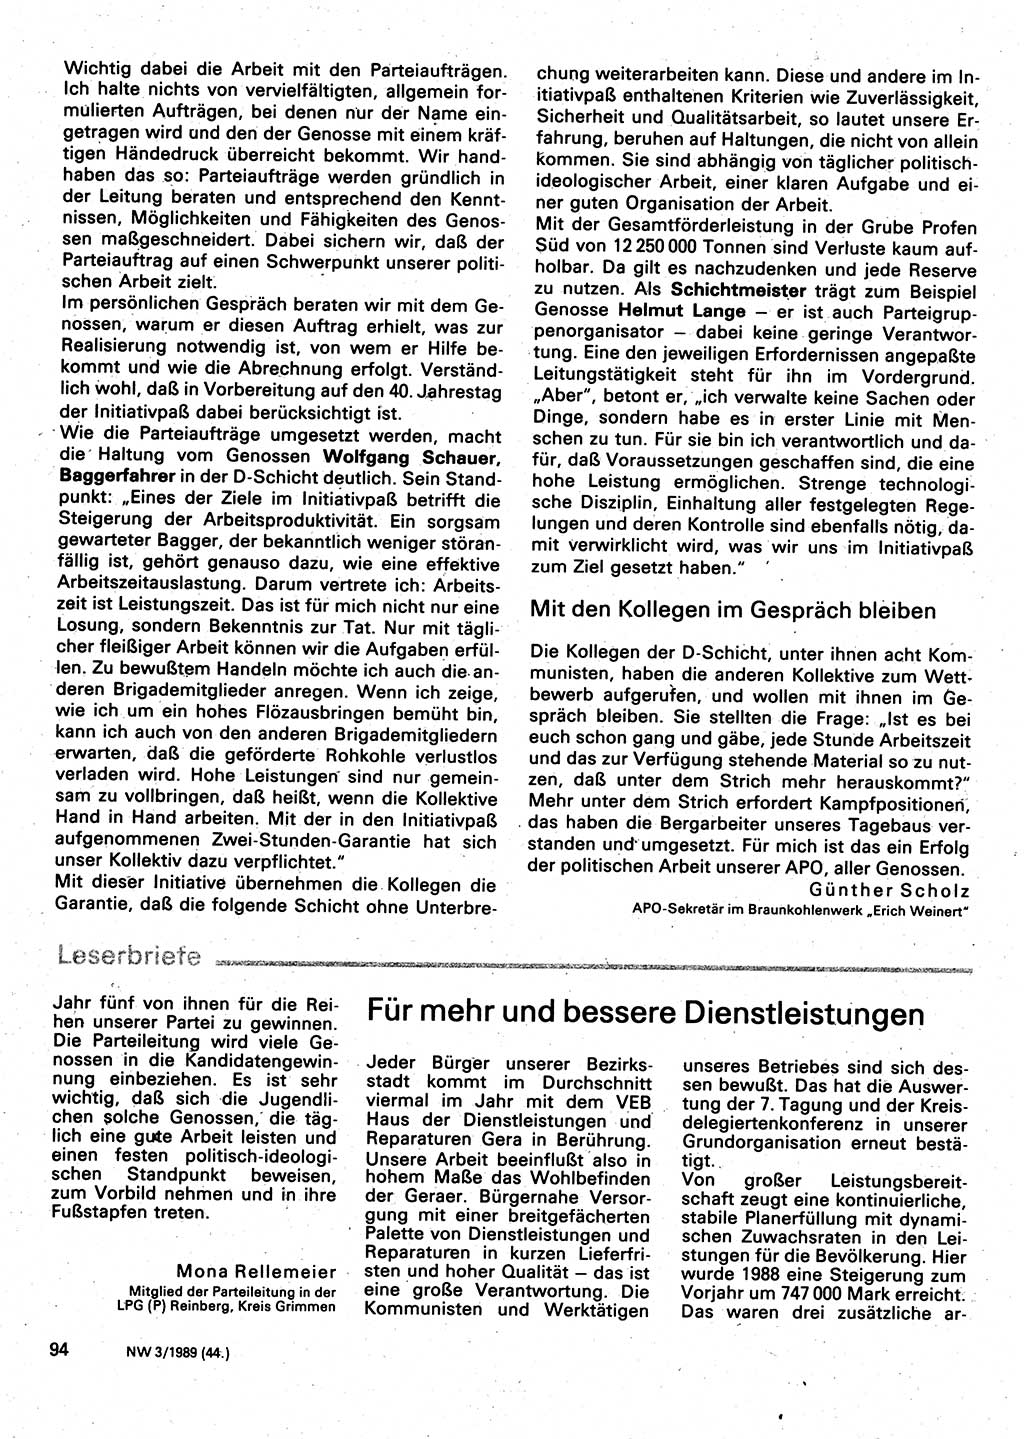 Neuer Weg (NW), Organ des Zentralkomitees (ZK) der SED (Sozialistische Einheitspartei Deutschlands) für Fragen des Parteilebens, 44. Jahrgang [Deutsche Demokratische Republik (DDR)] 1989, Seite 94 (NW ZK SED DDR 1989, S. 94)